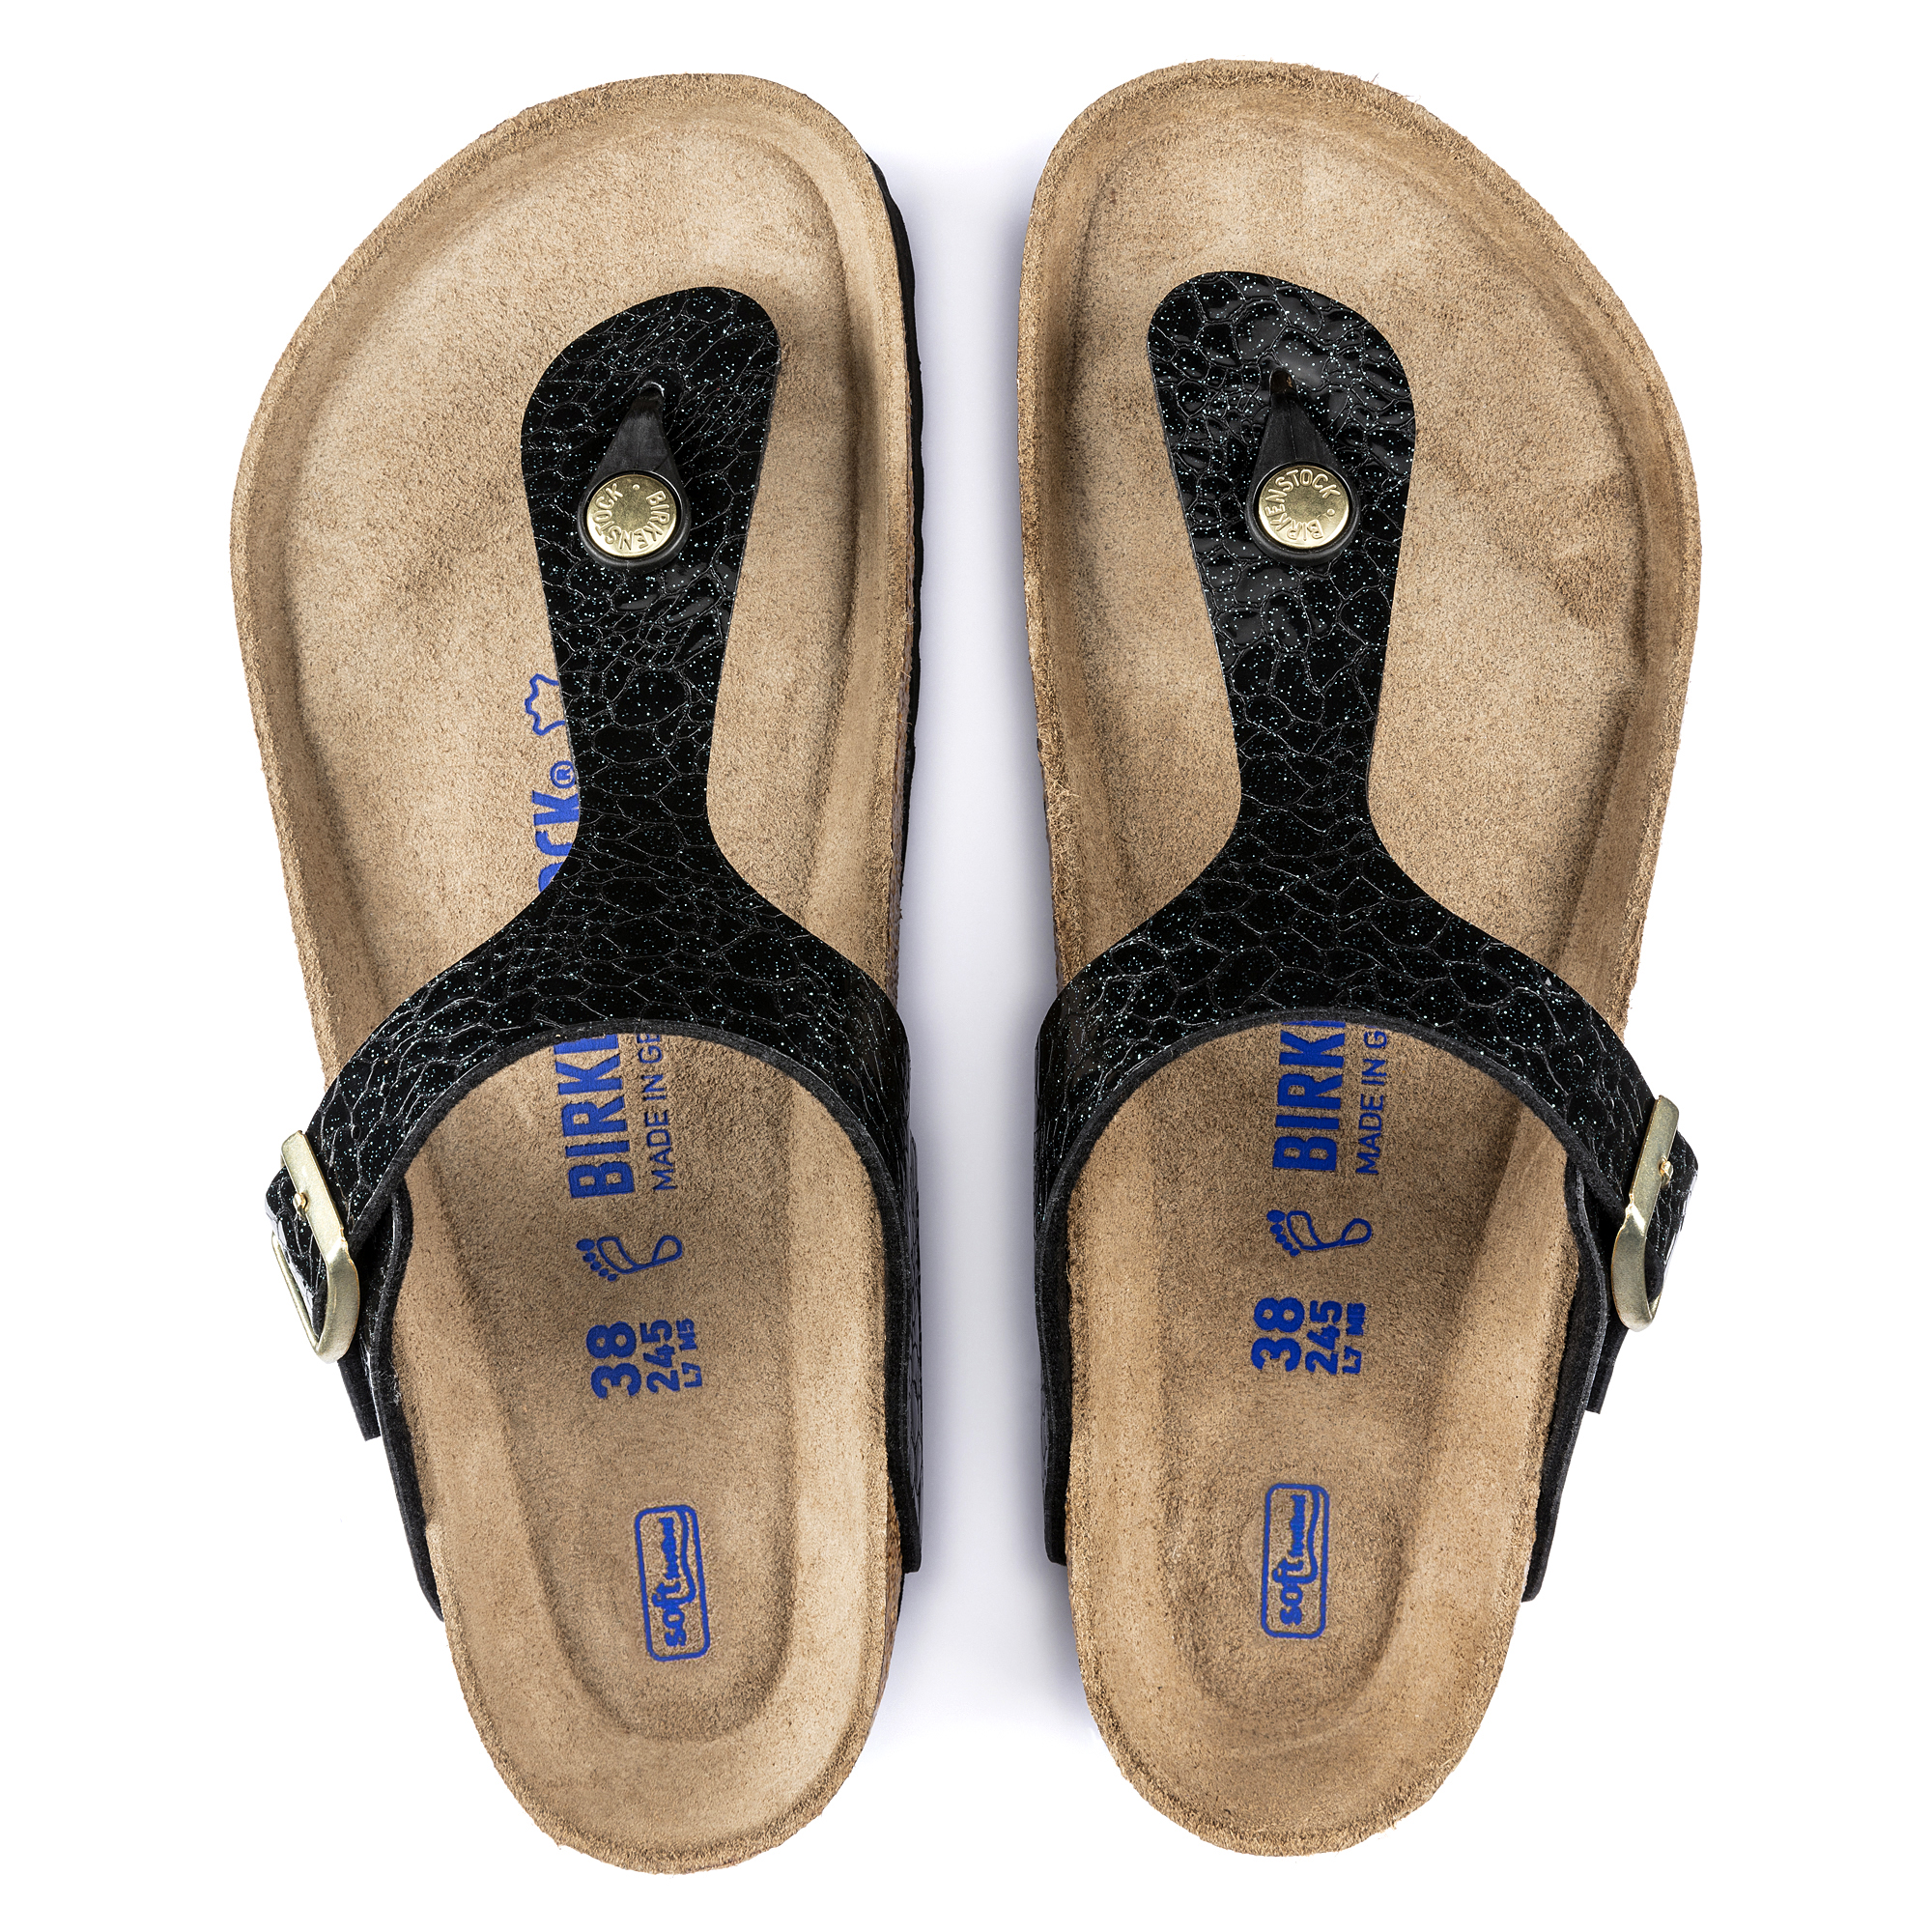 birkenstock gizeh soft footbed sandals